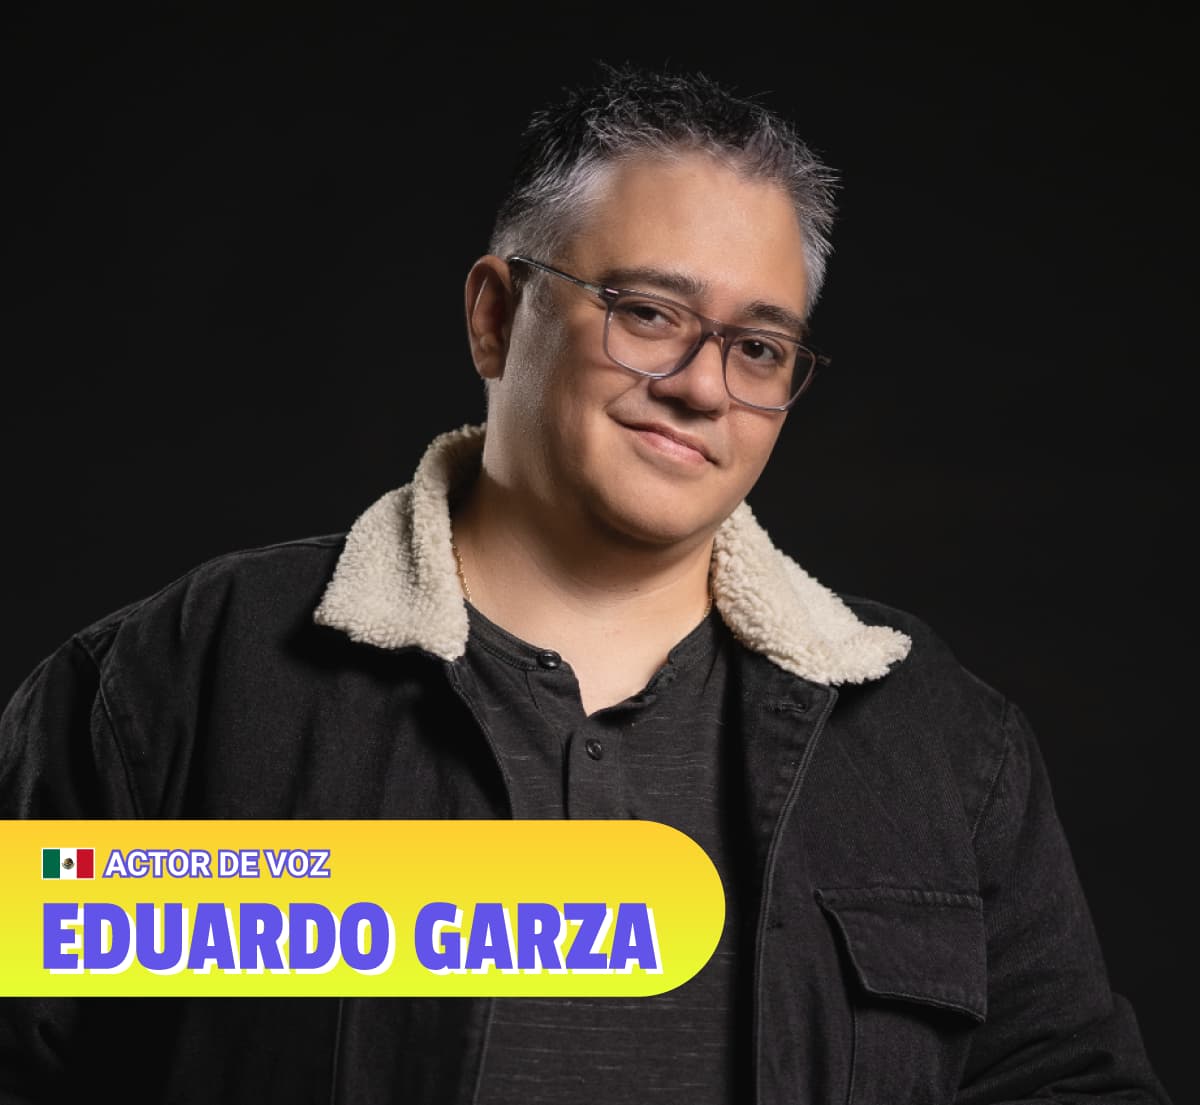 Eduardo Garza - Actor de Voz